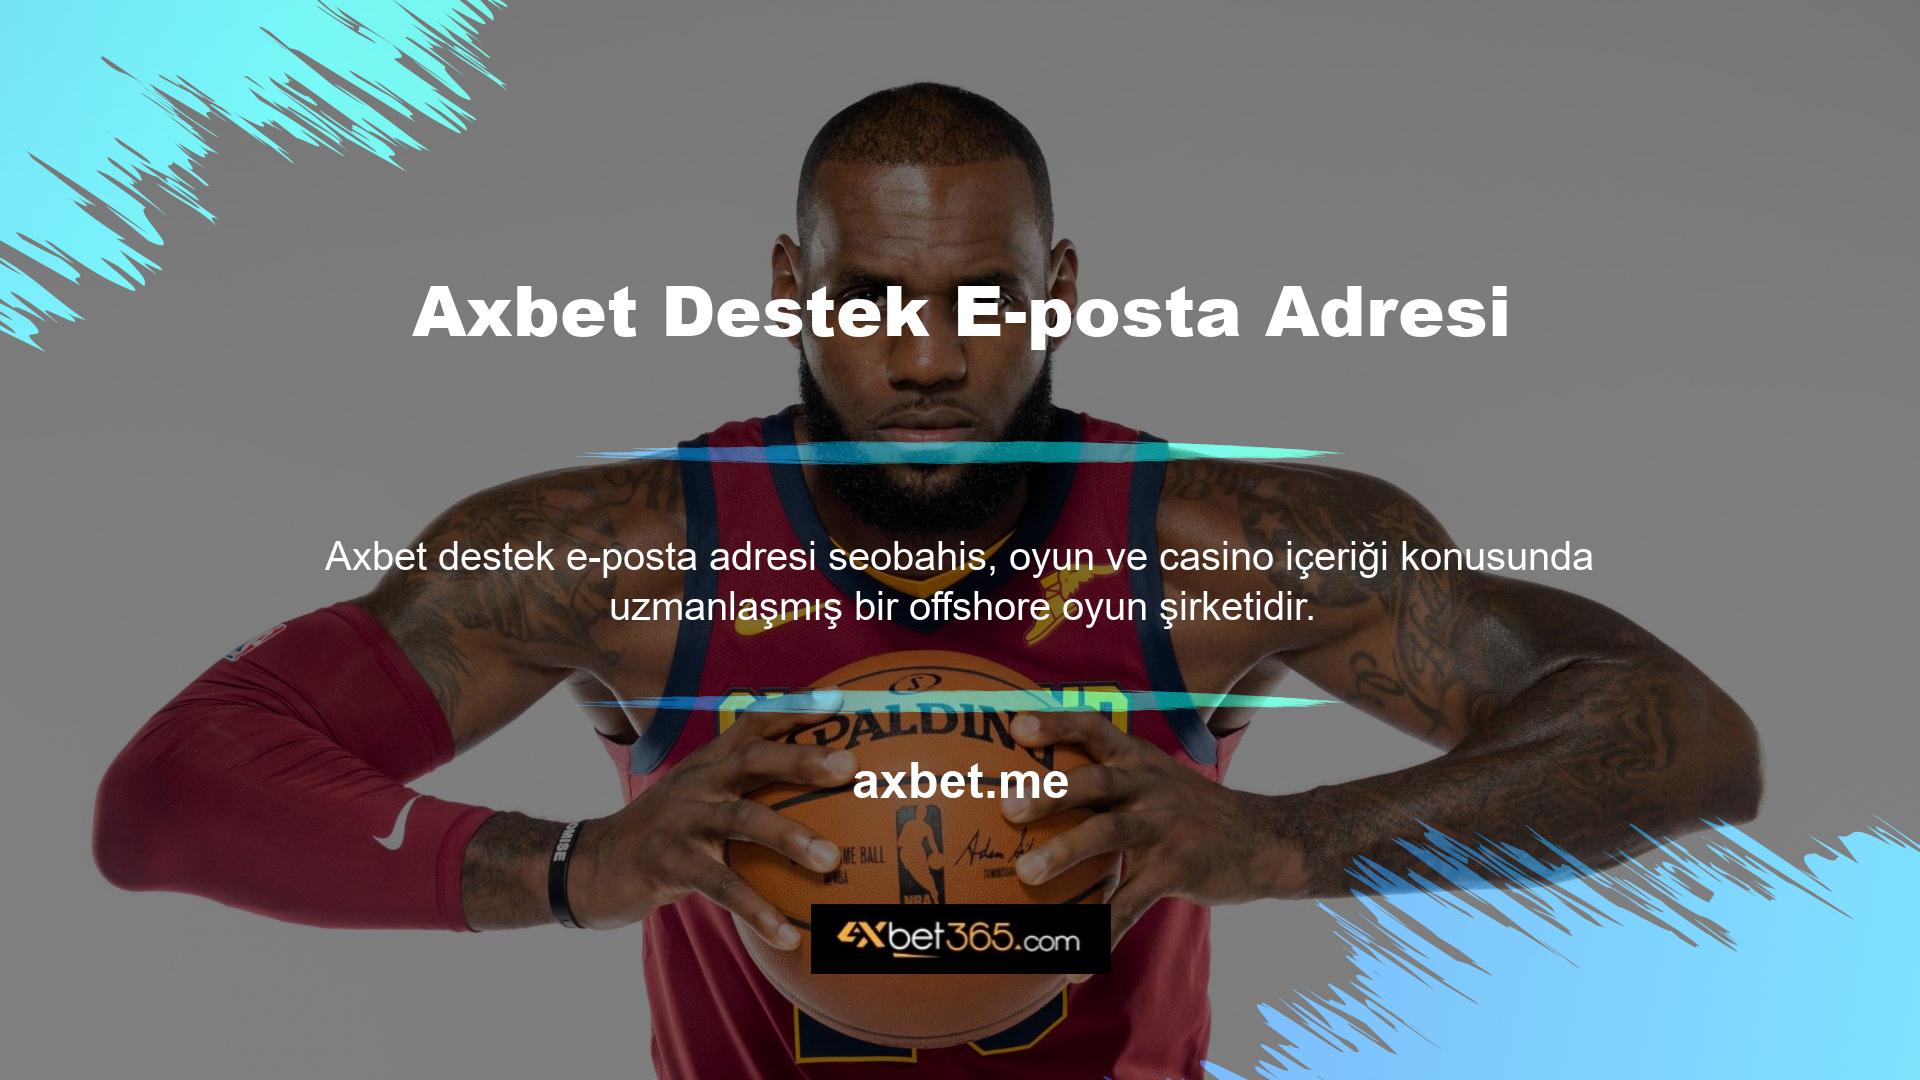 Axbet kısa süre içerisinde yeni adresi aktif edip kullanıcıya gönderecektir